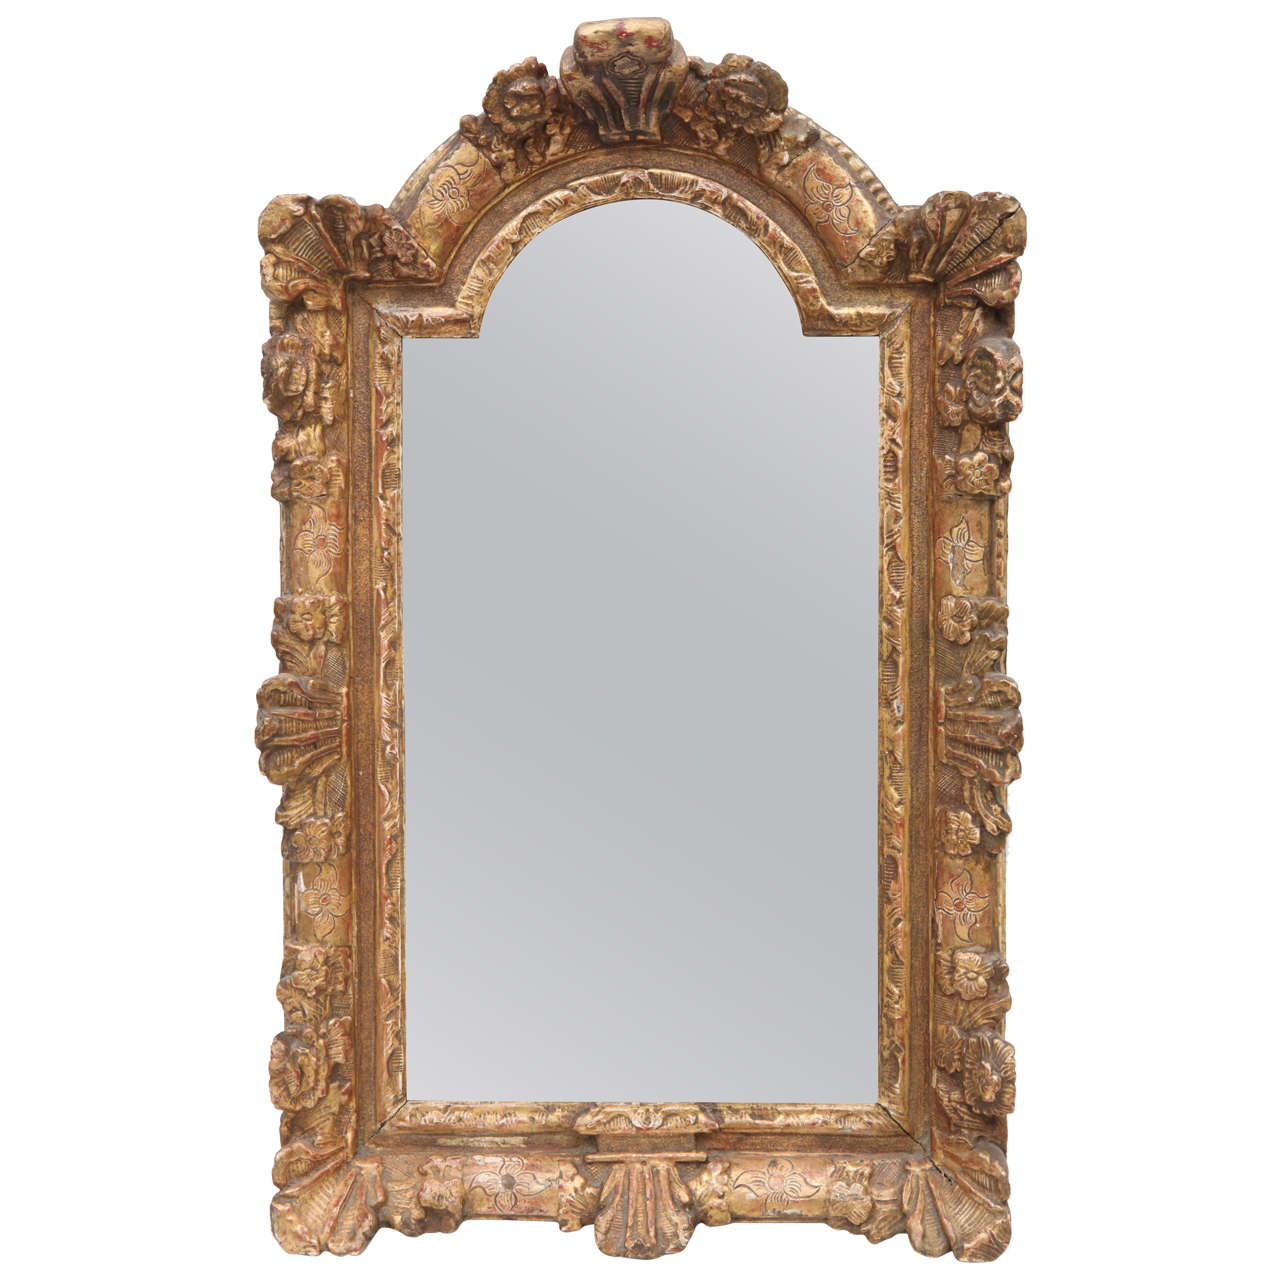 Miroir en bois doré de style Régence française du XVIIIe siècle